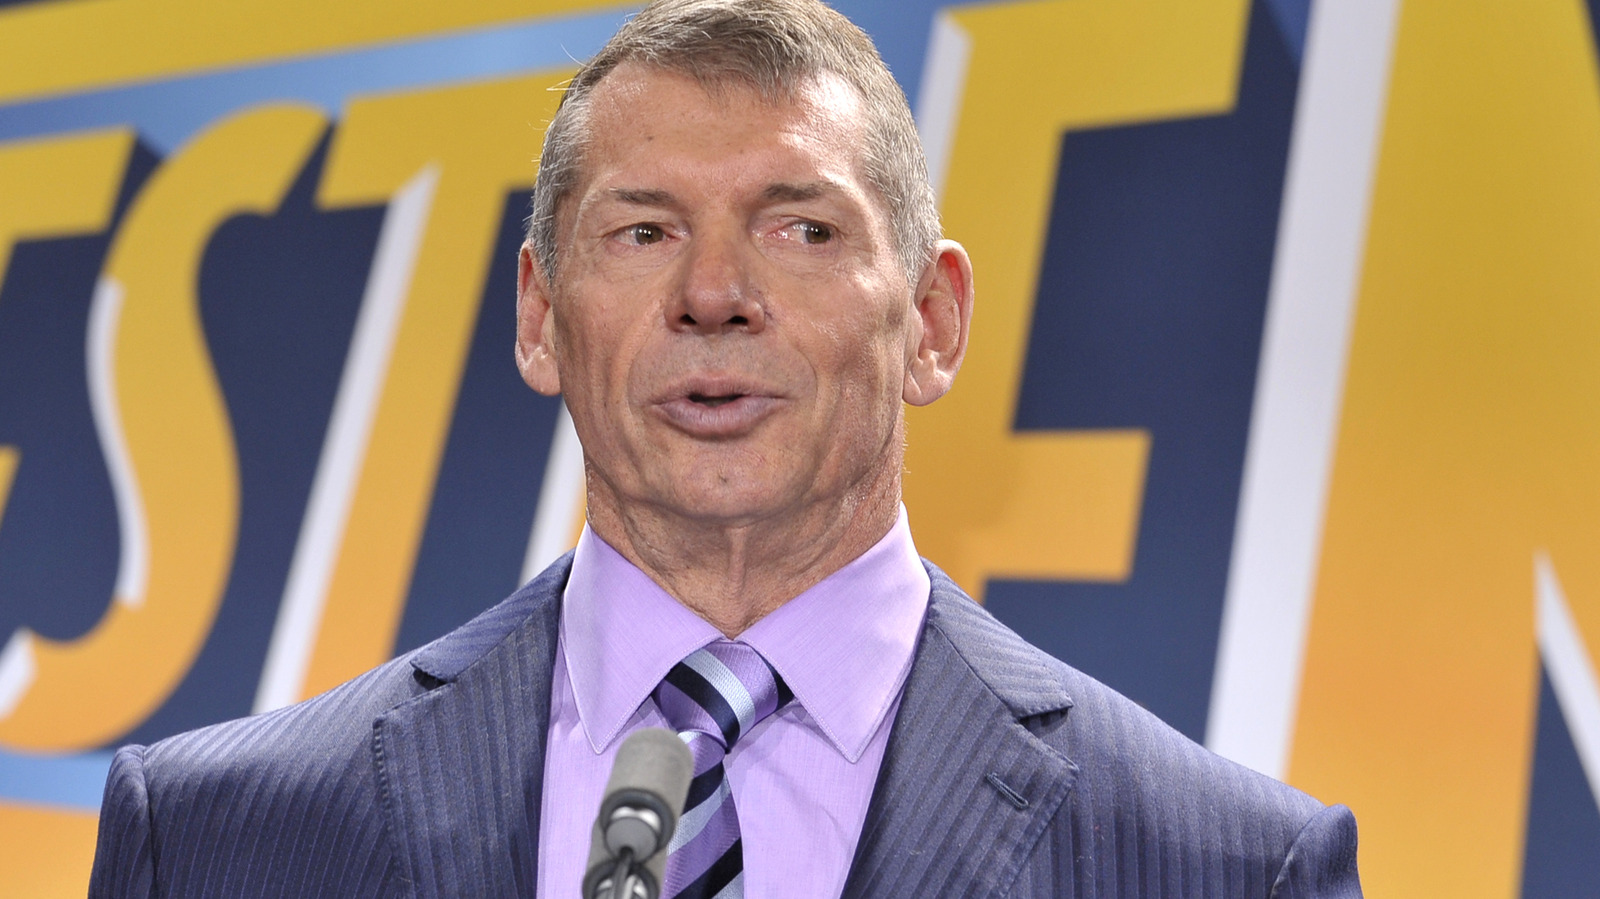 Detalles detrás del escenario sobre la reportada ausencia de Vince McMahon del equipo creativo de WWE